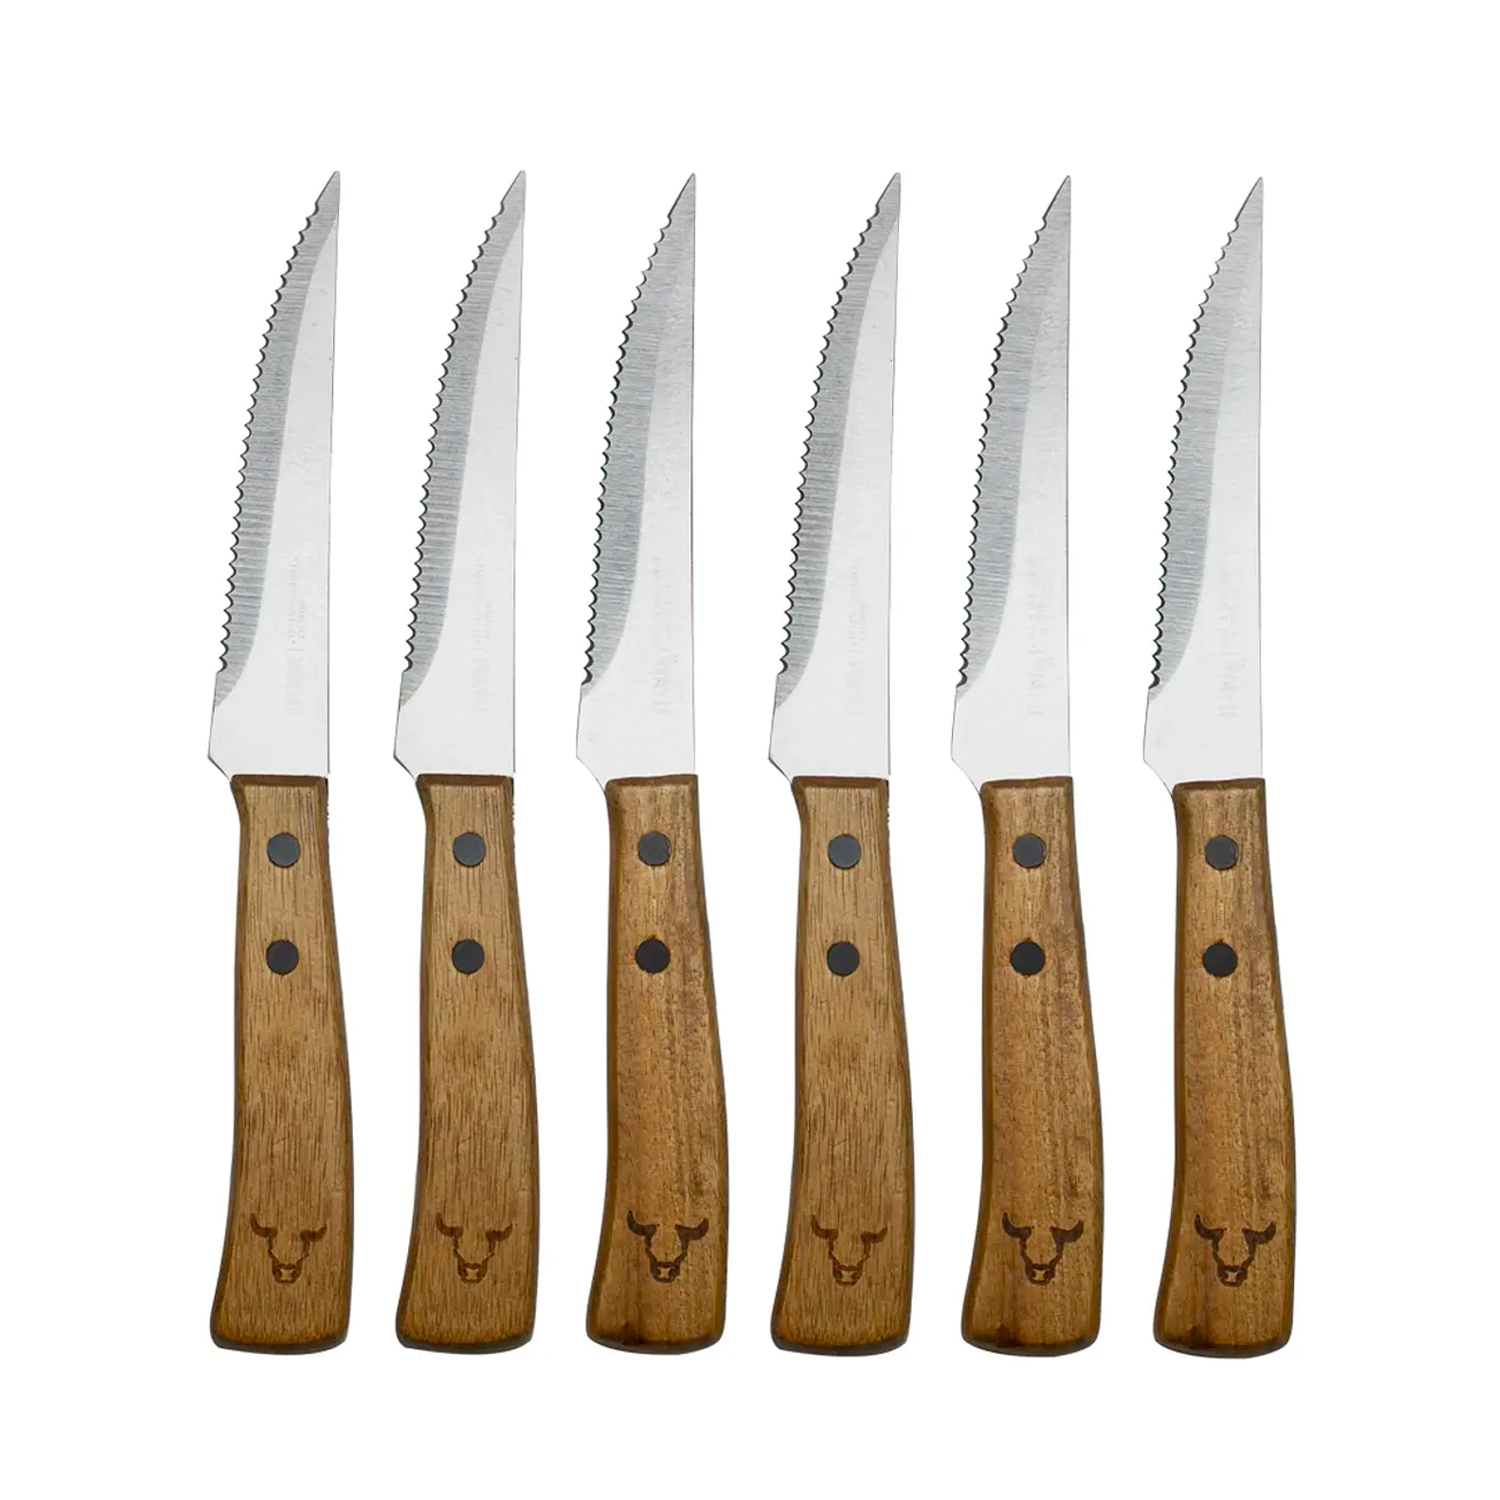 Realiza cortes perfectos al comprar el set de cuchillos